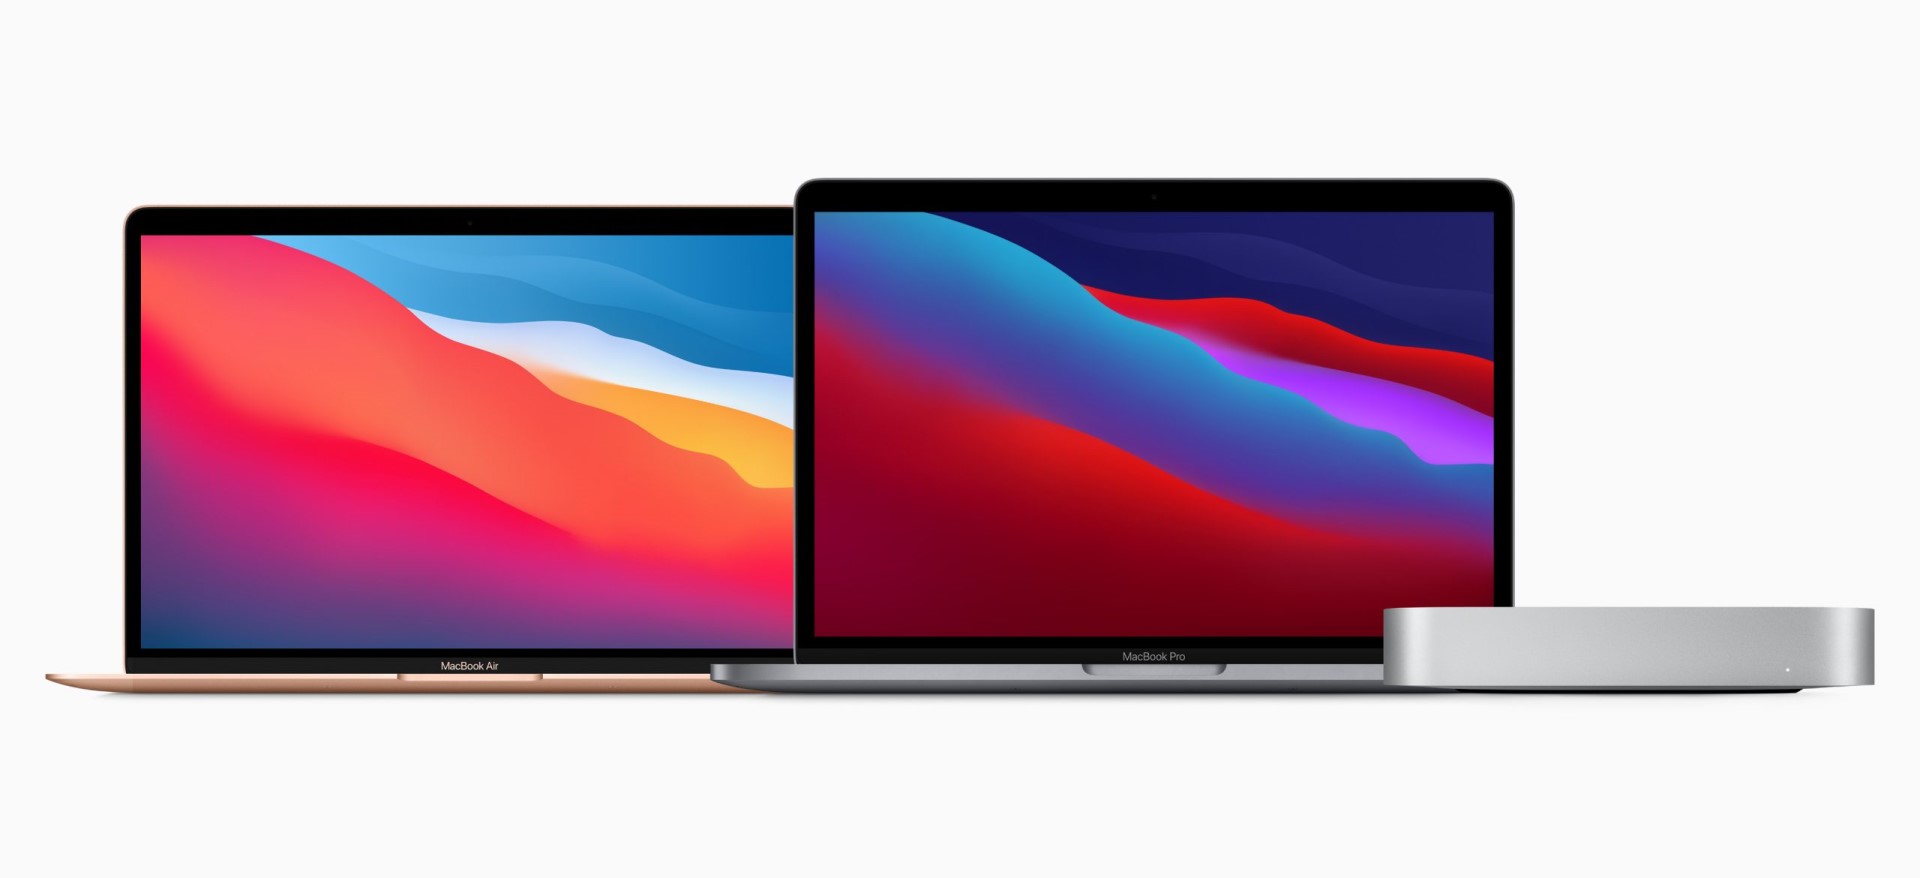 Apple nuovi Mac con Apple Silicon M1